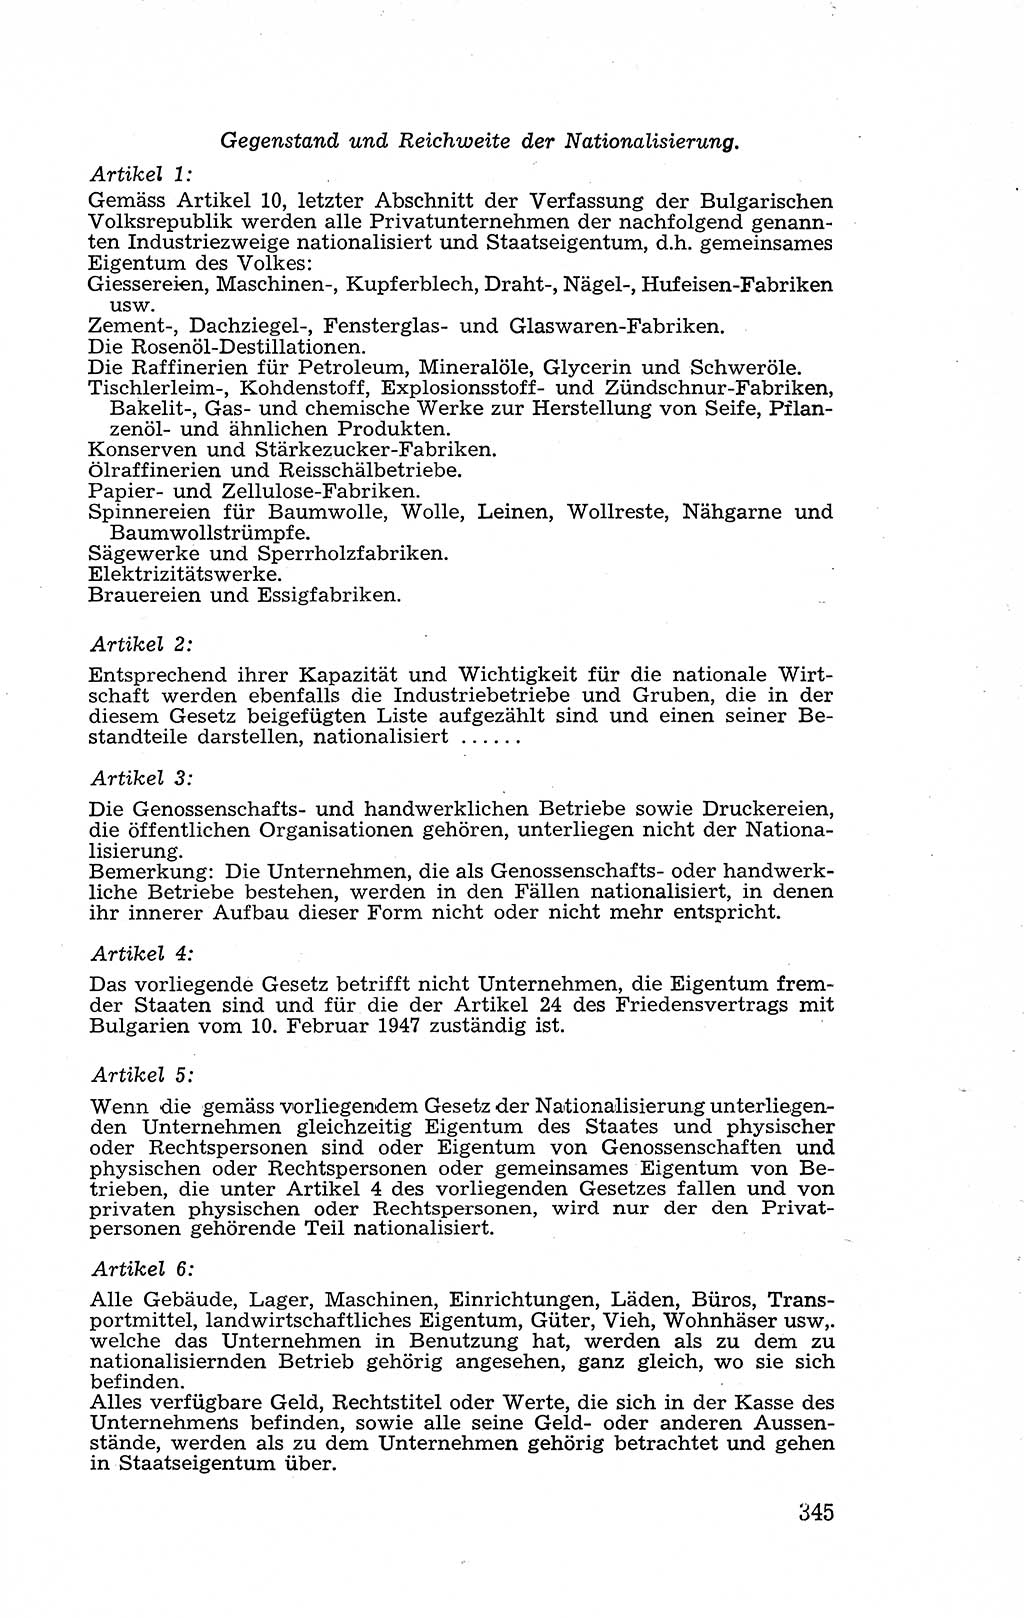 Recht in Fesseln, Dokumente, Internationale Juristen-Kommission [Bundesrepublik Deutschland (BRD)] 1955, Seite 345 (R. Dok. IJK BRD 1955, S. 345)